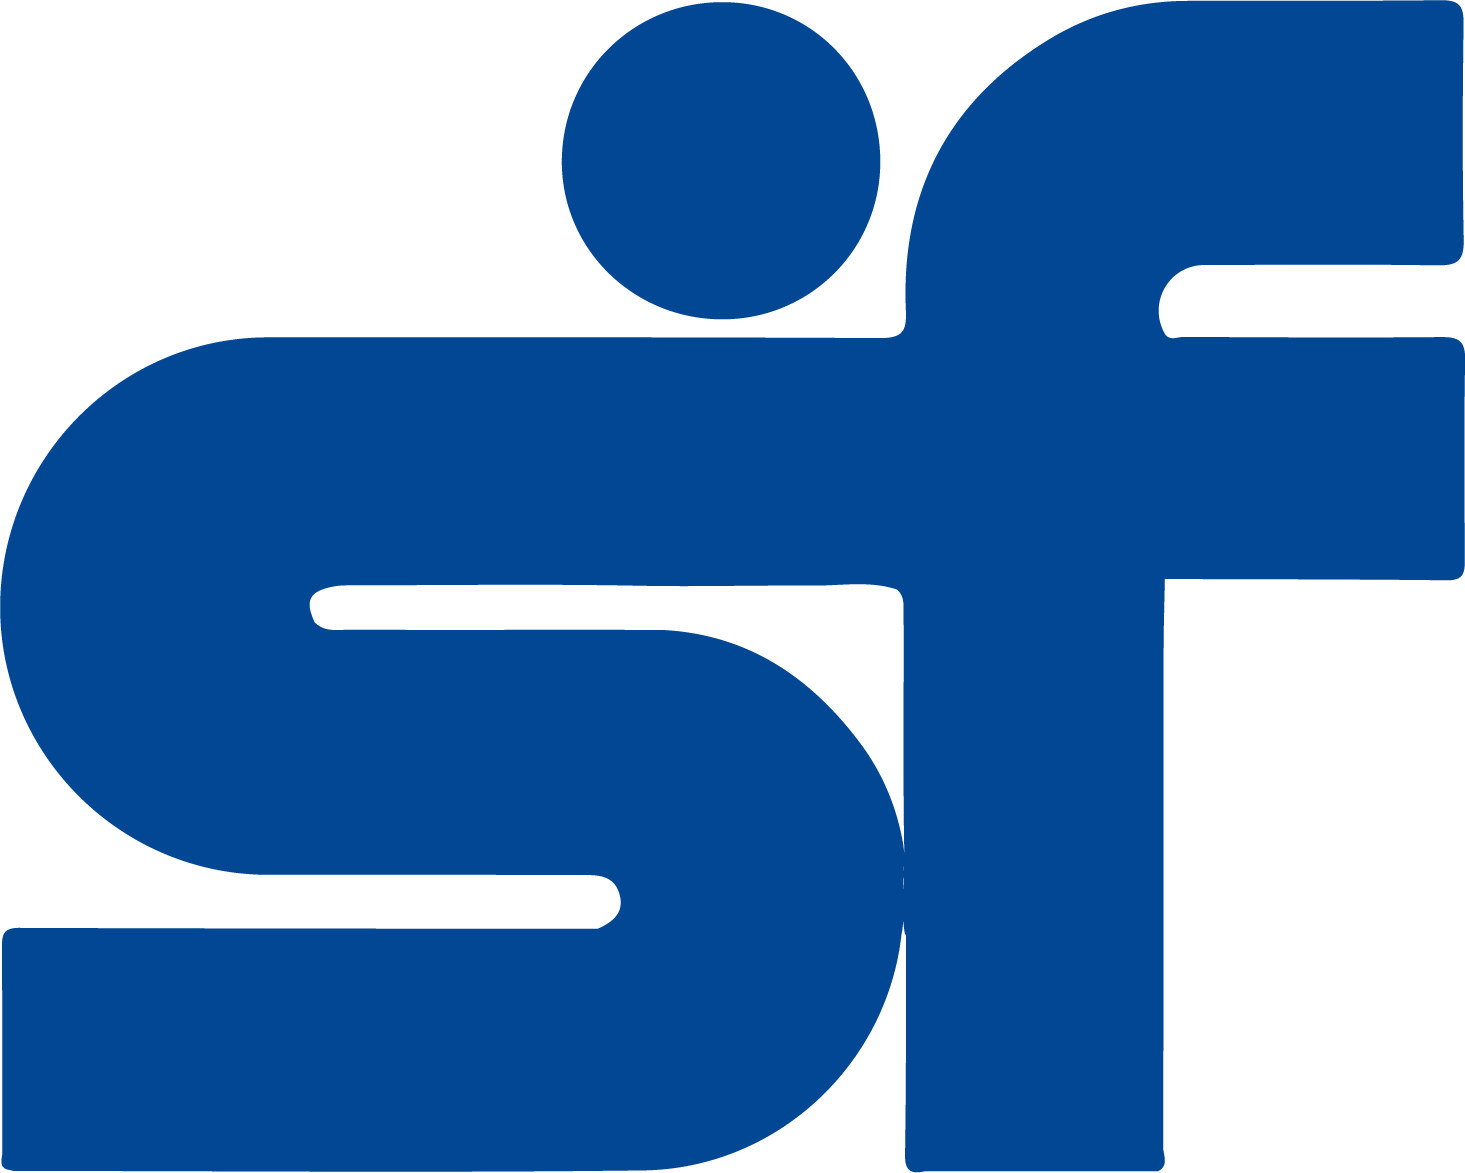 Sundaram Finance logo in transparent PNG format